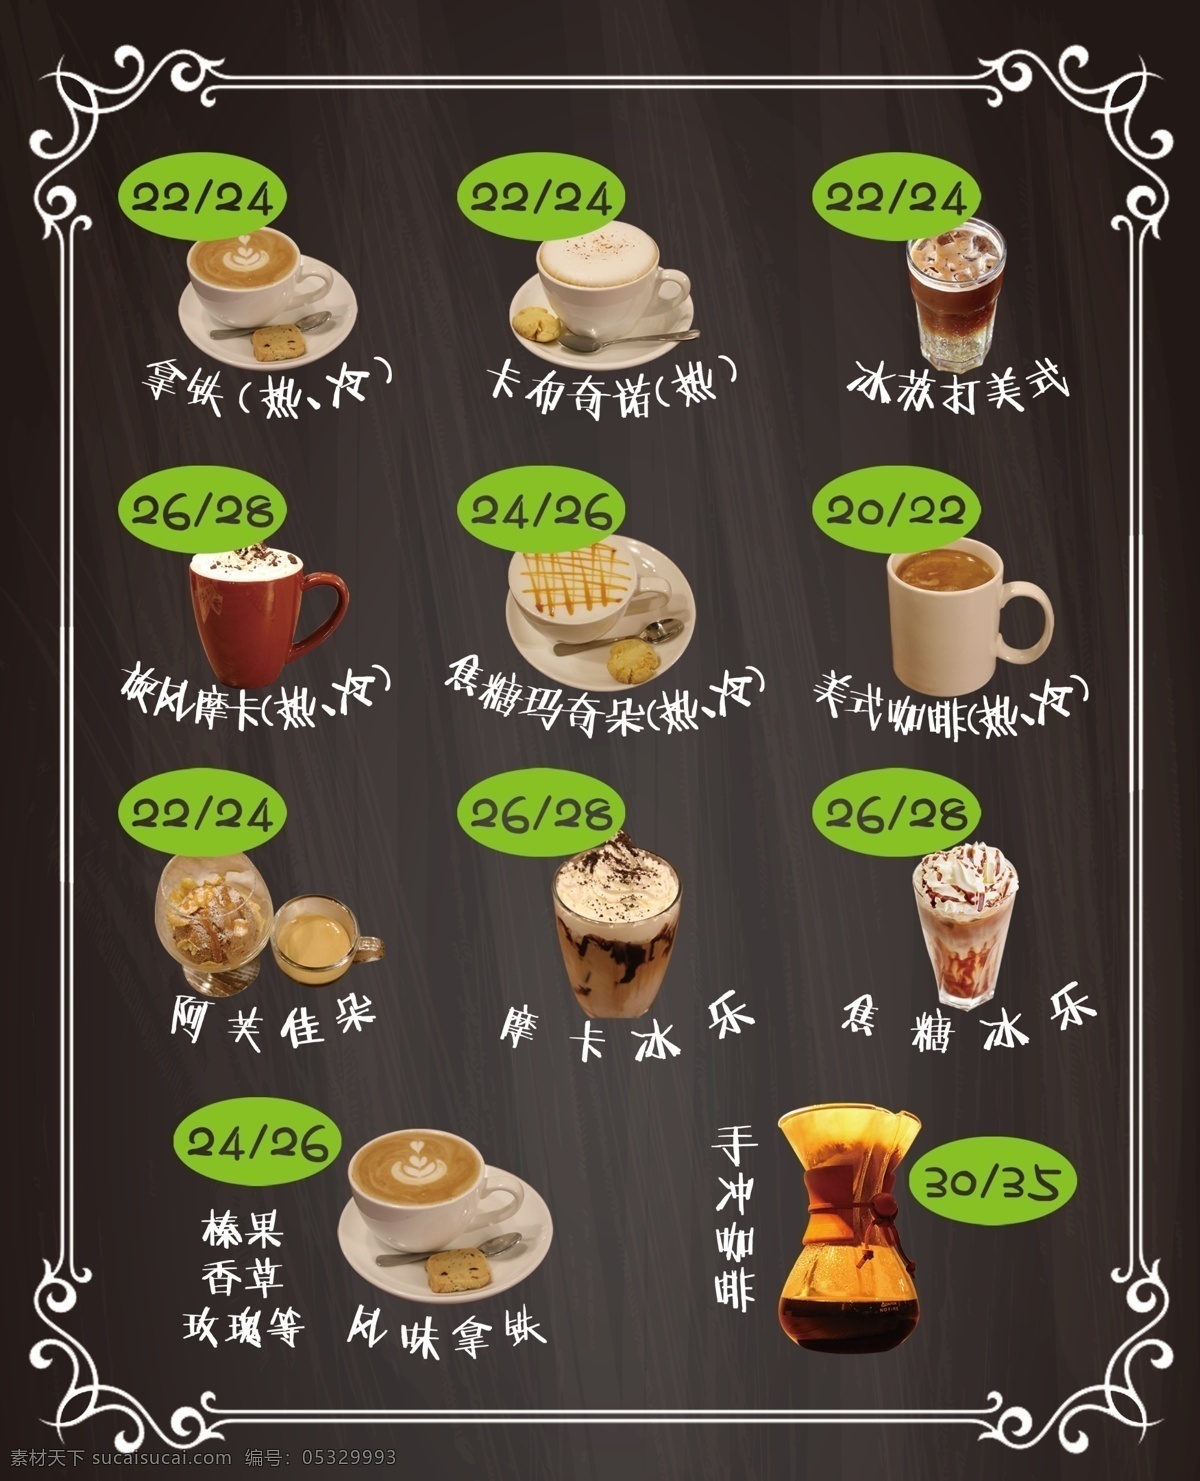 咖啡菜单 咖啡 菜单 拿铁 摩卡 阿芙佳朵 美式